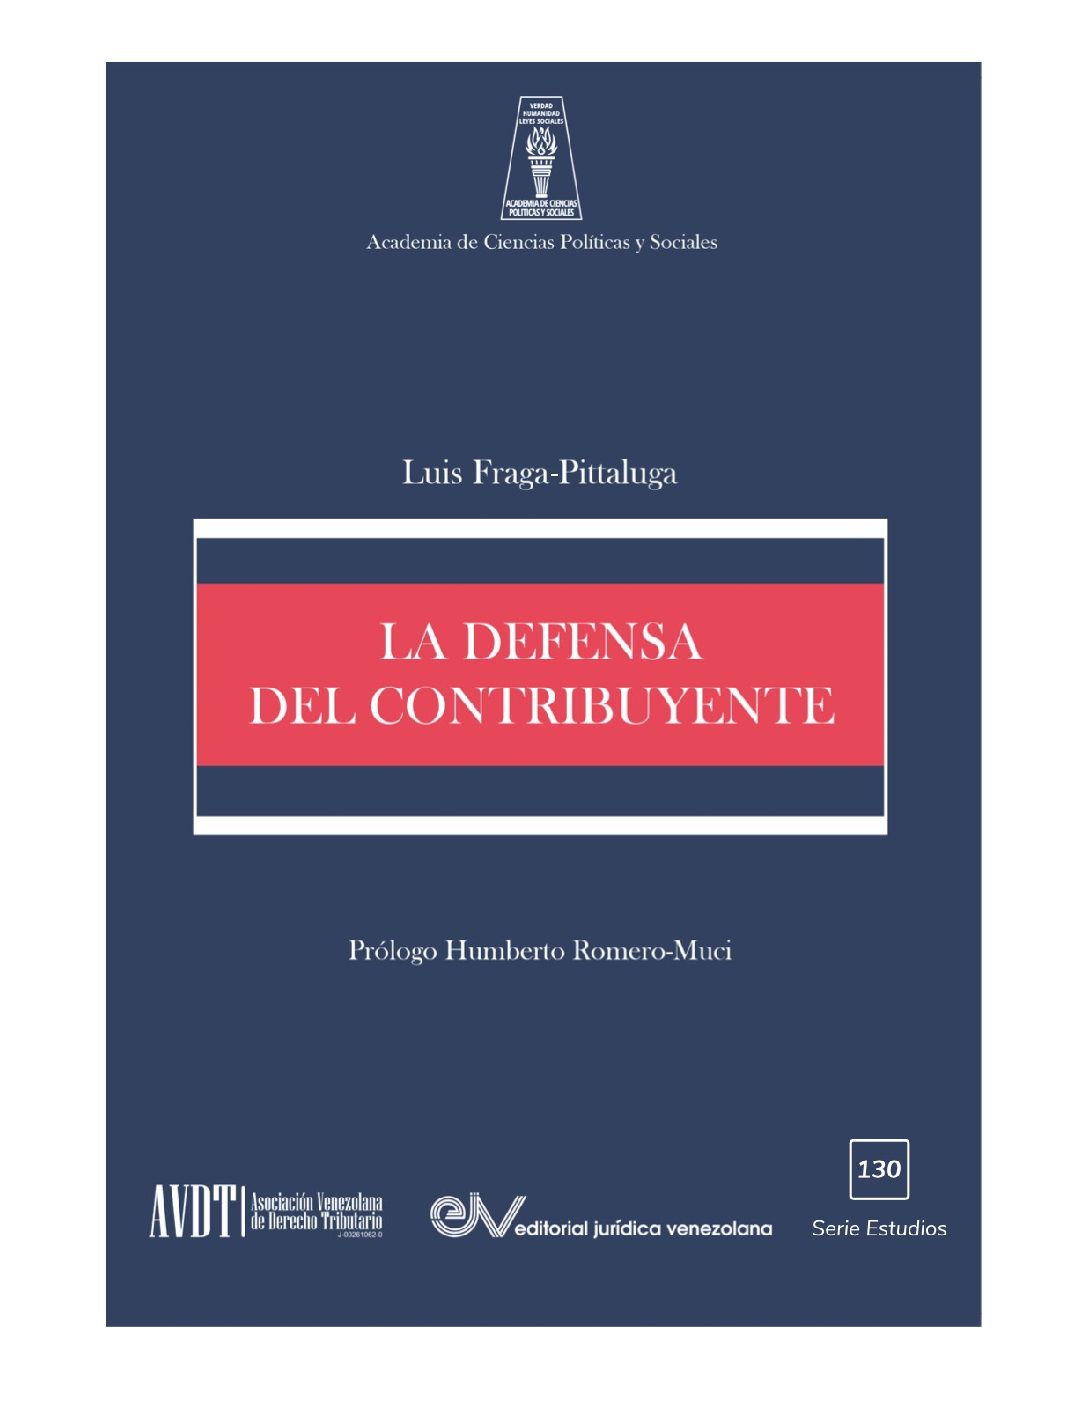 Disponible a texto completo el libro: La defensa del contribuyente de Luis Fraga-Pittaluga